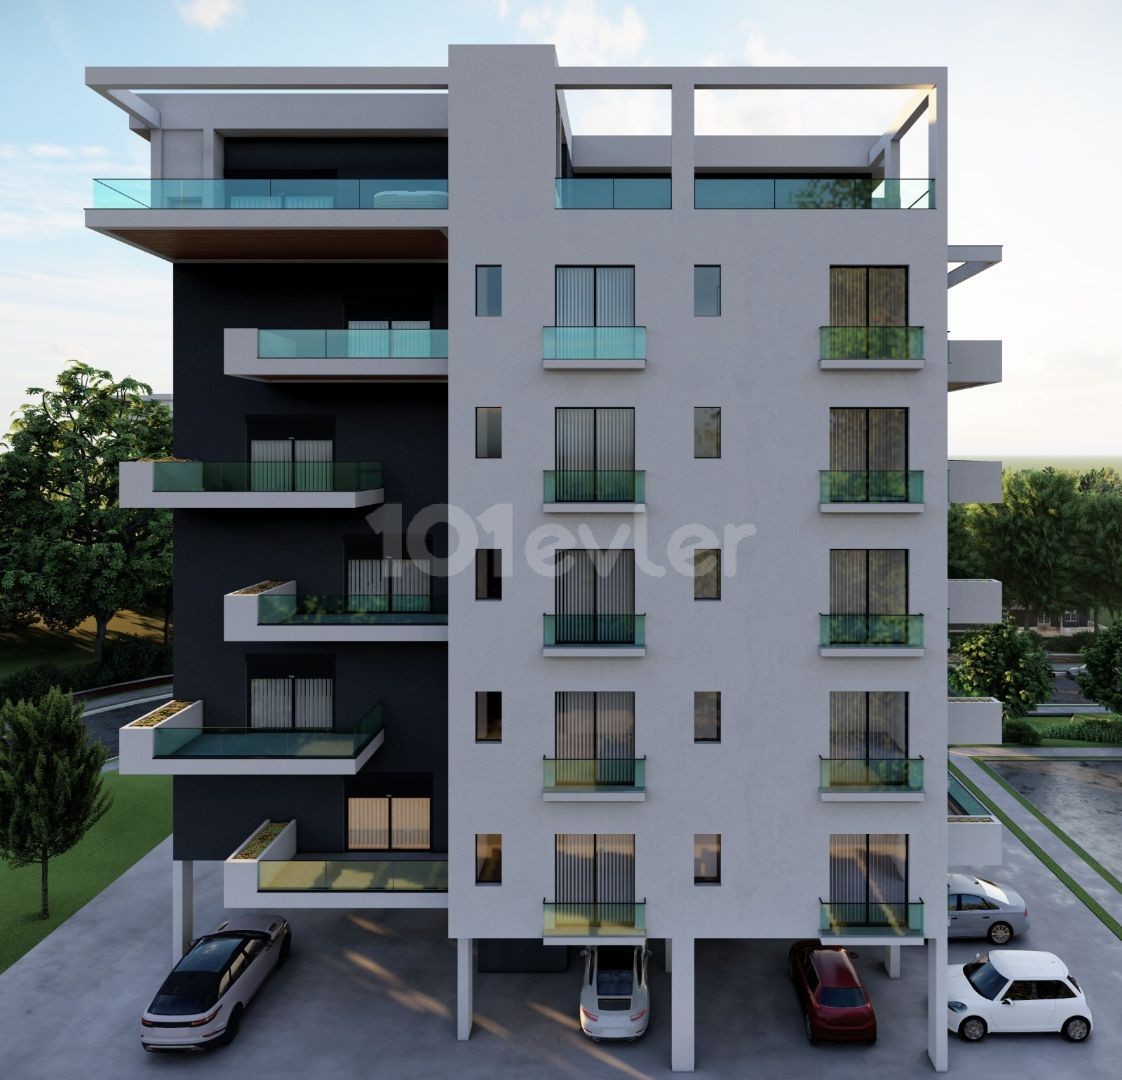 2+1 Wohnungen zum Verkauf in der Gegend von Nicosia Beach aus dem Projekt